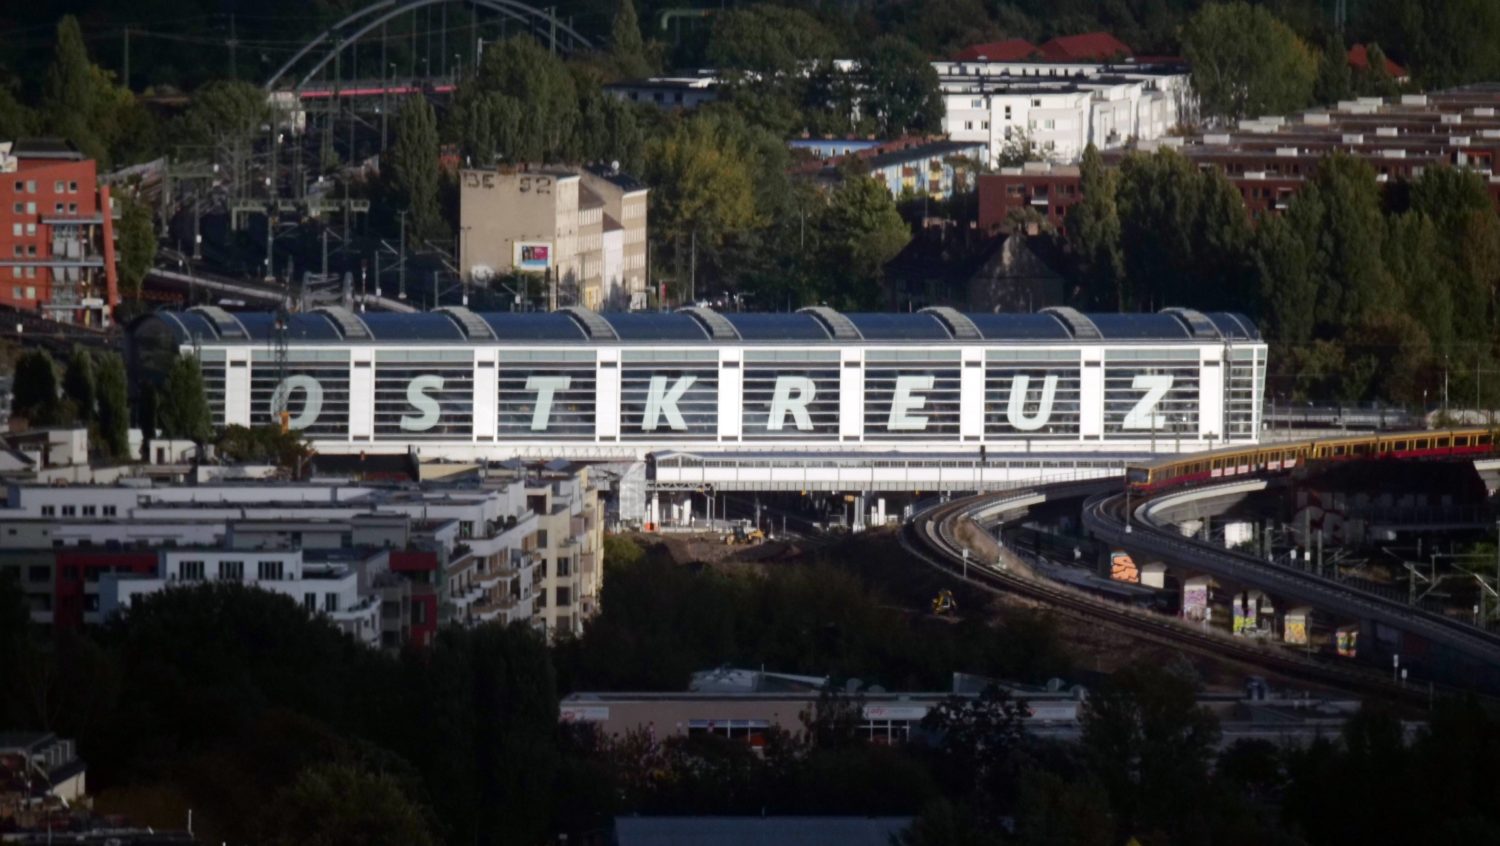 Friedrichshain im Lockdown: Bahnhof Ostkreuz in Friedrichshain. Foto: Imago Images/Peter Sandbiller